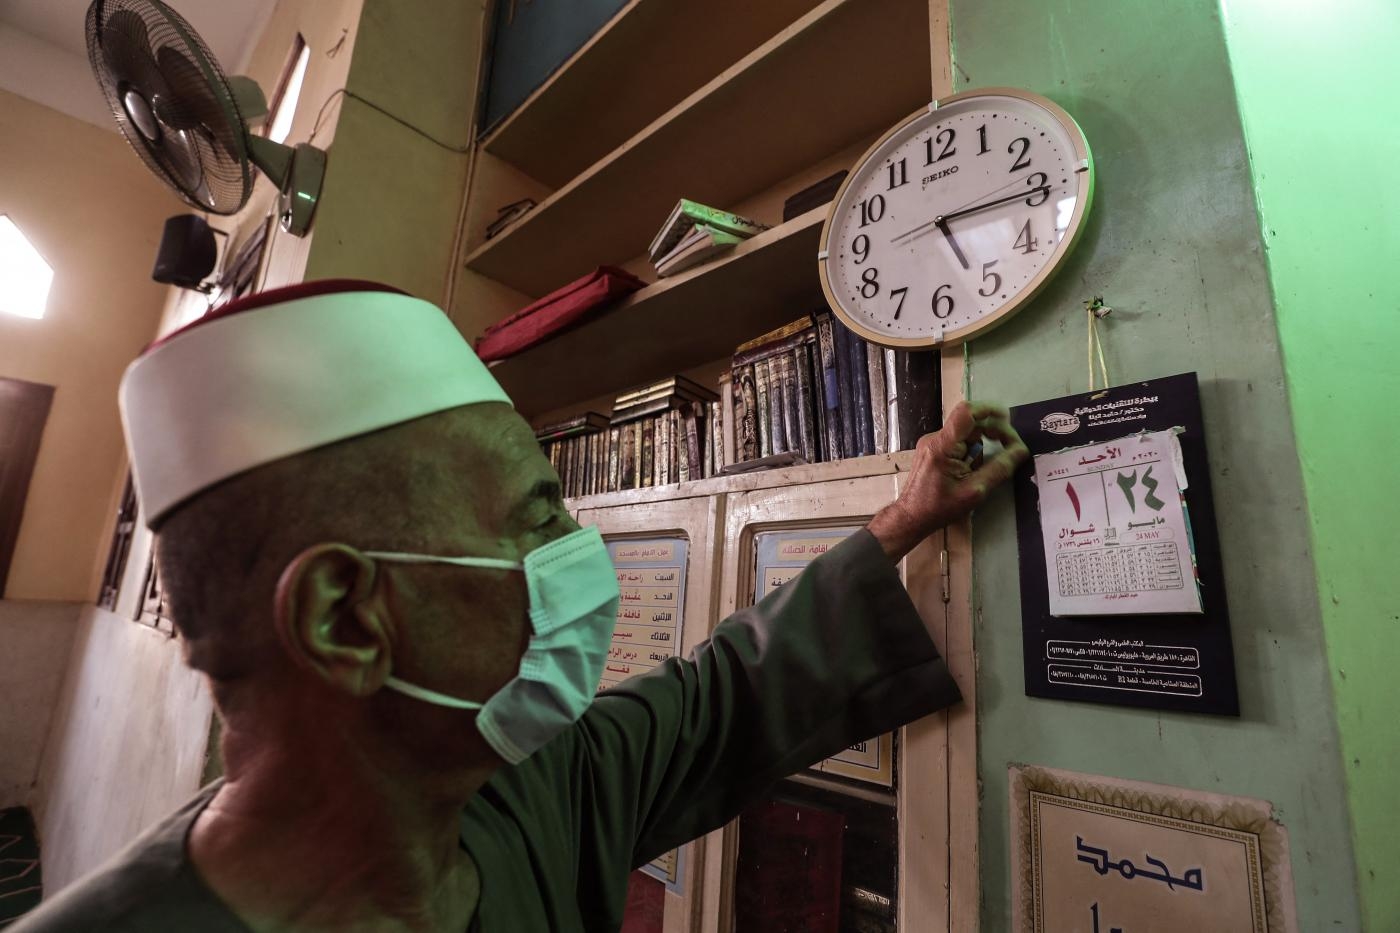 Les livres contenus dans les bibliothèques des mosquées seront inspectés et beaucoup seront retirés dans les semaines à venir (AFP)